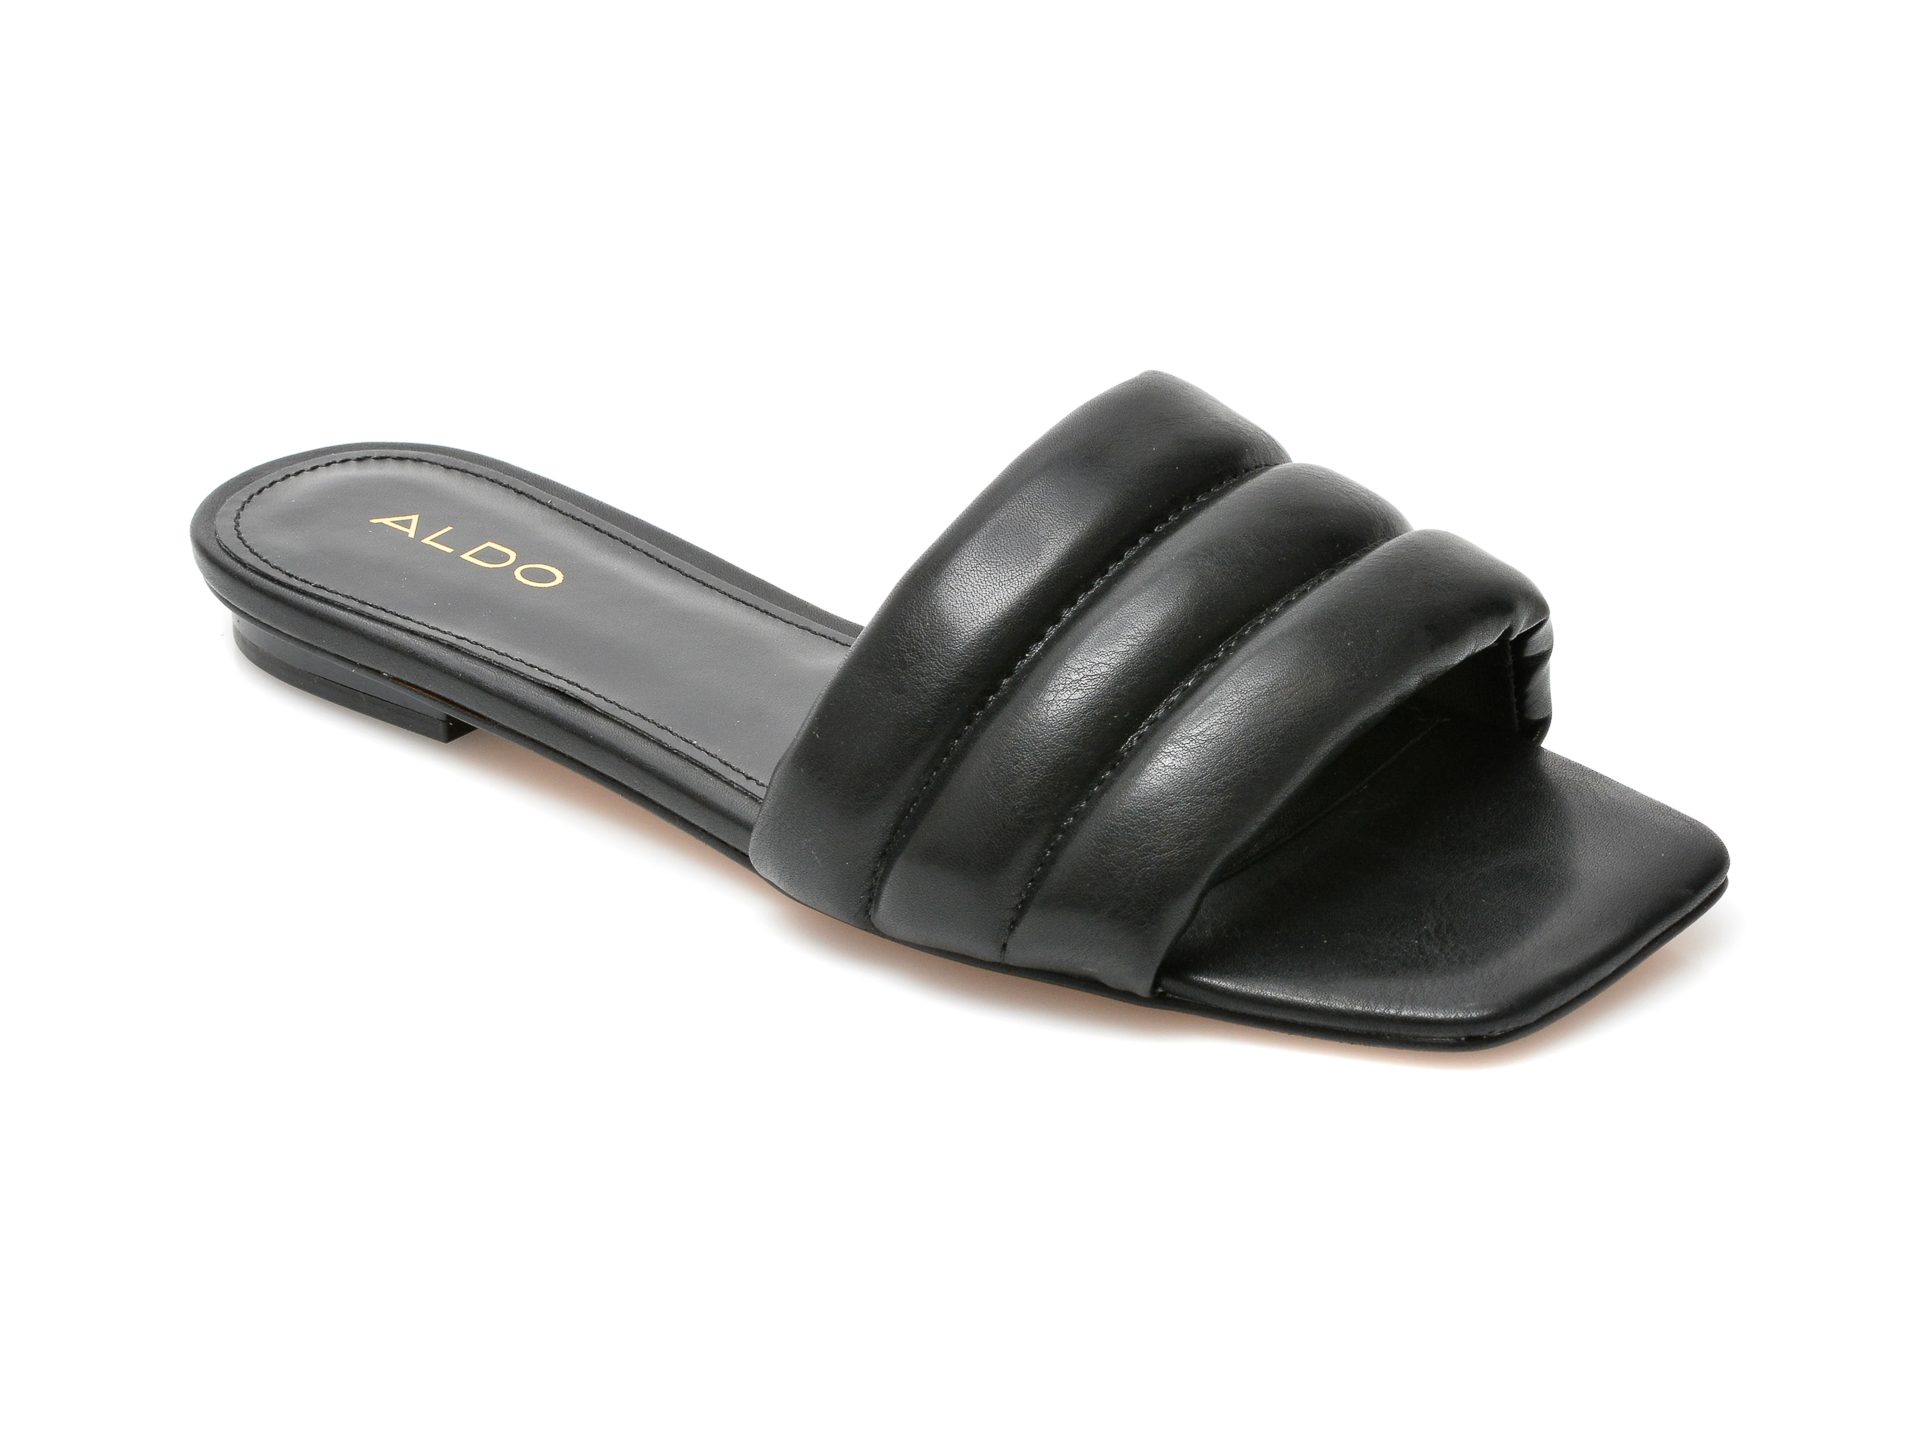 Papuci ALDO negri, Goani001, din piele ecologica Aldo